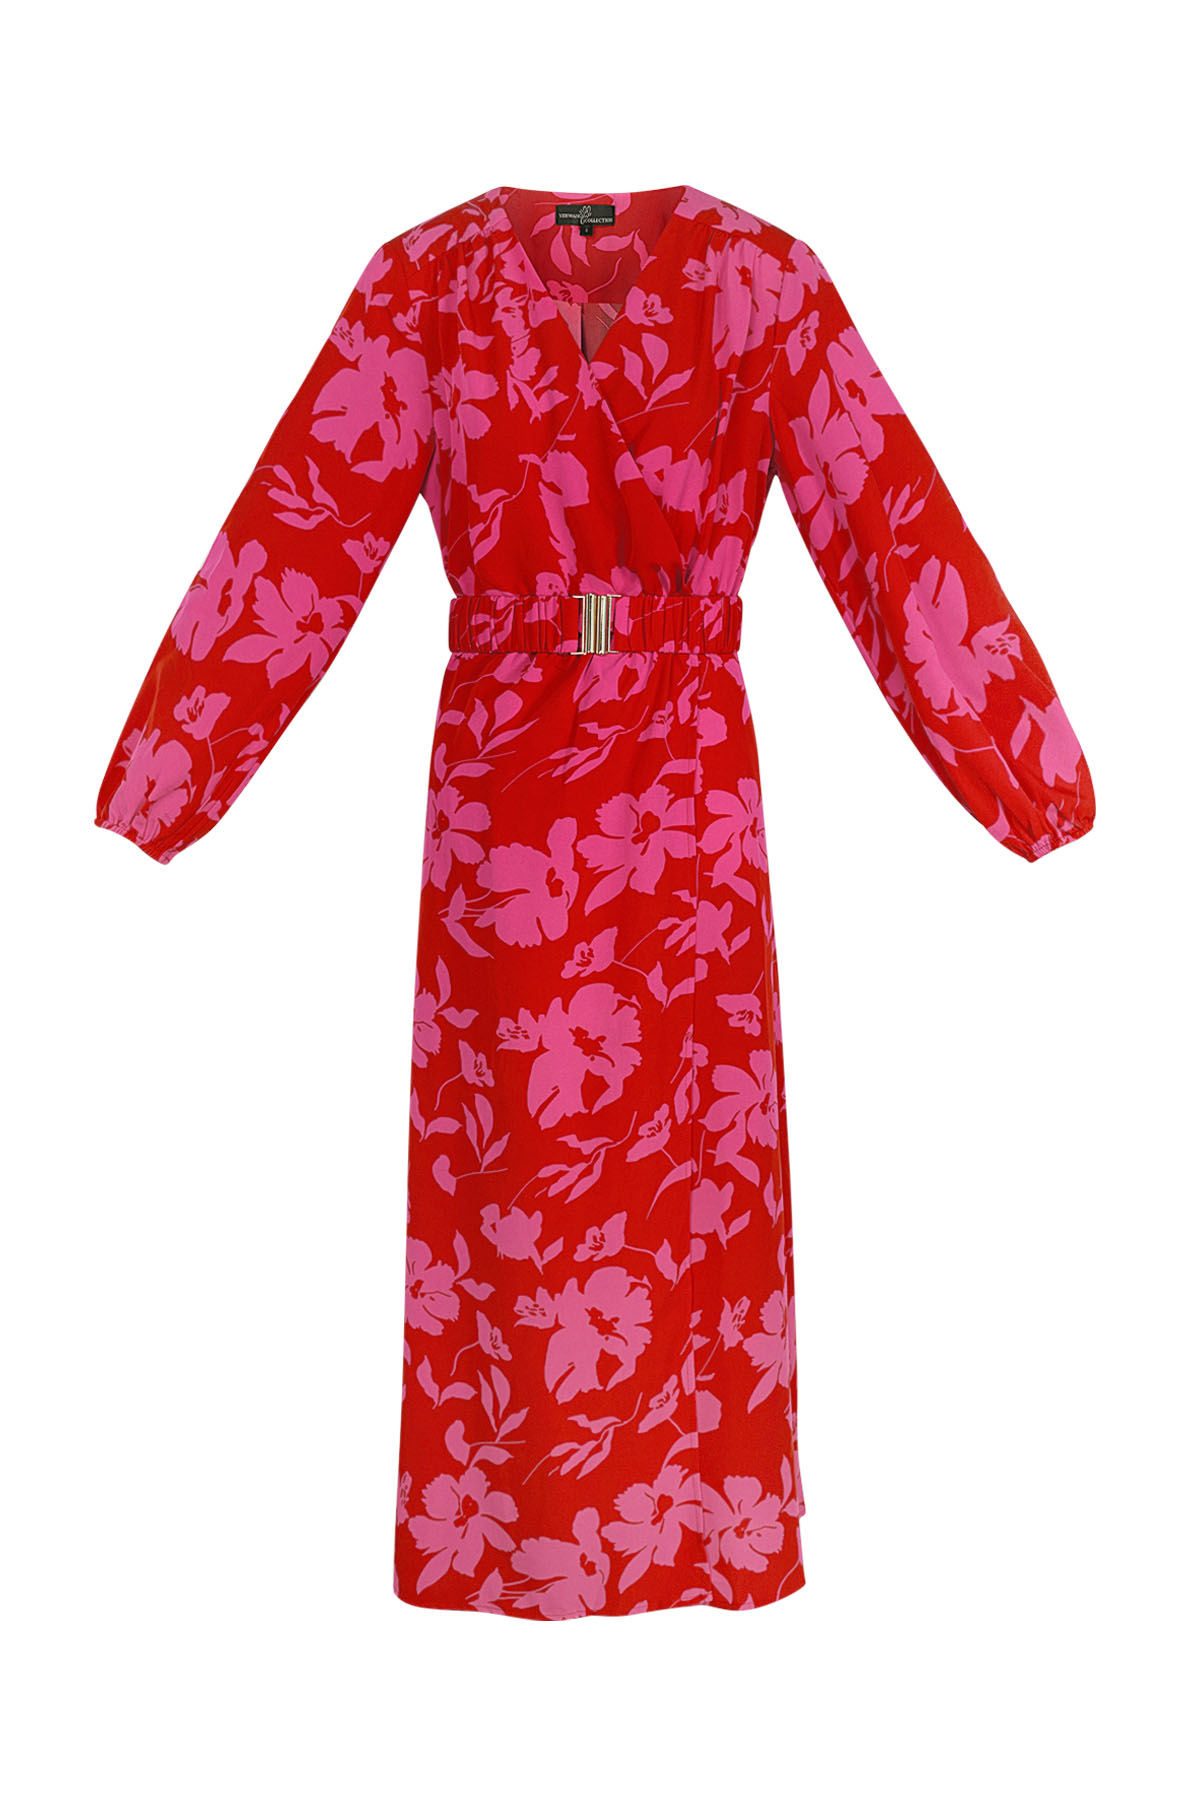 Maxi vestido estampado floral rosa rojo